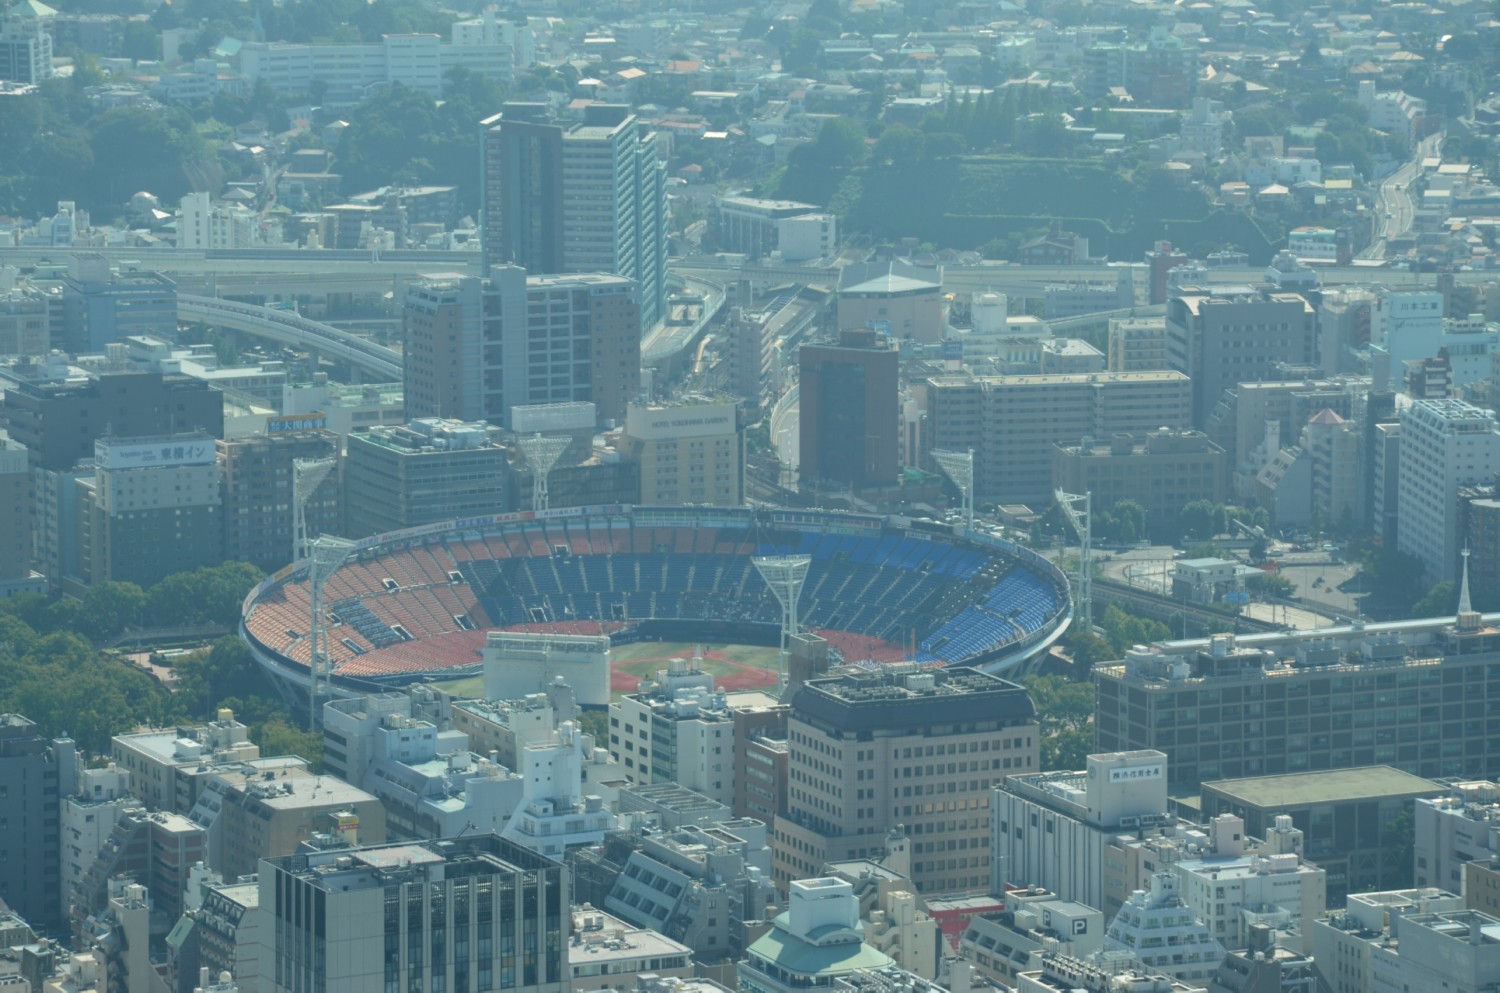 Yokohama stadion